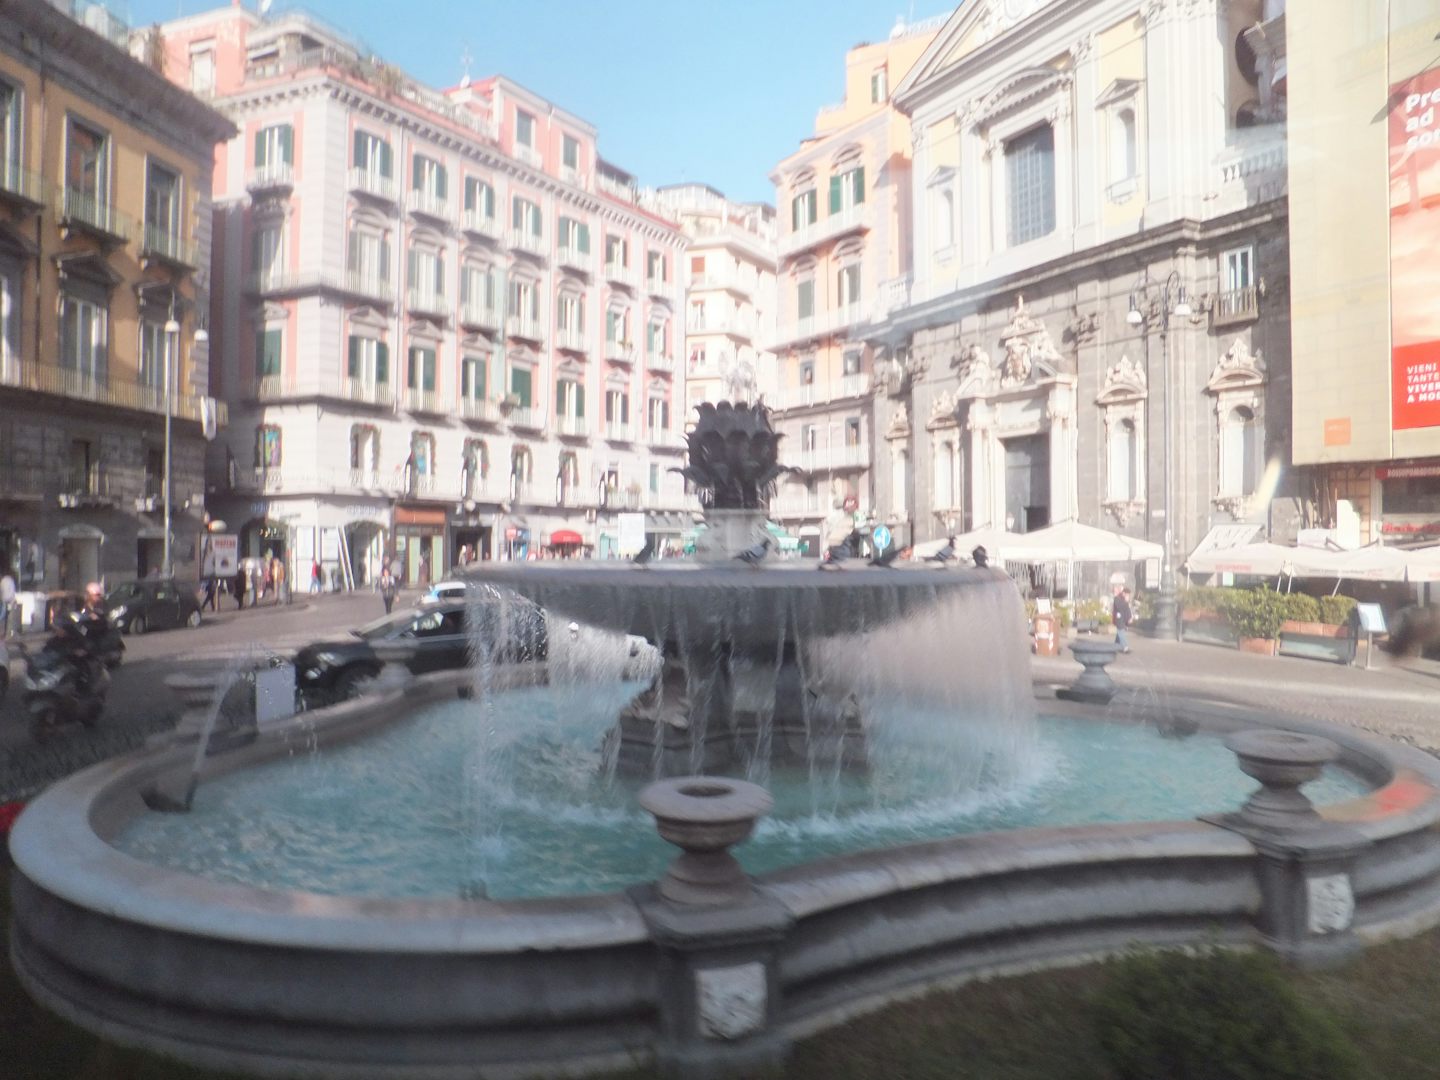 Naples square